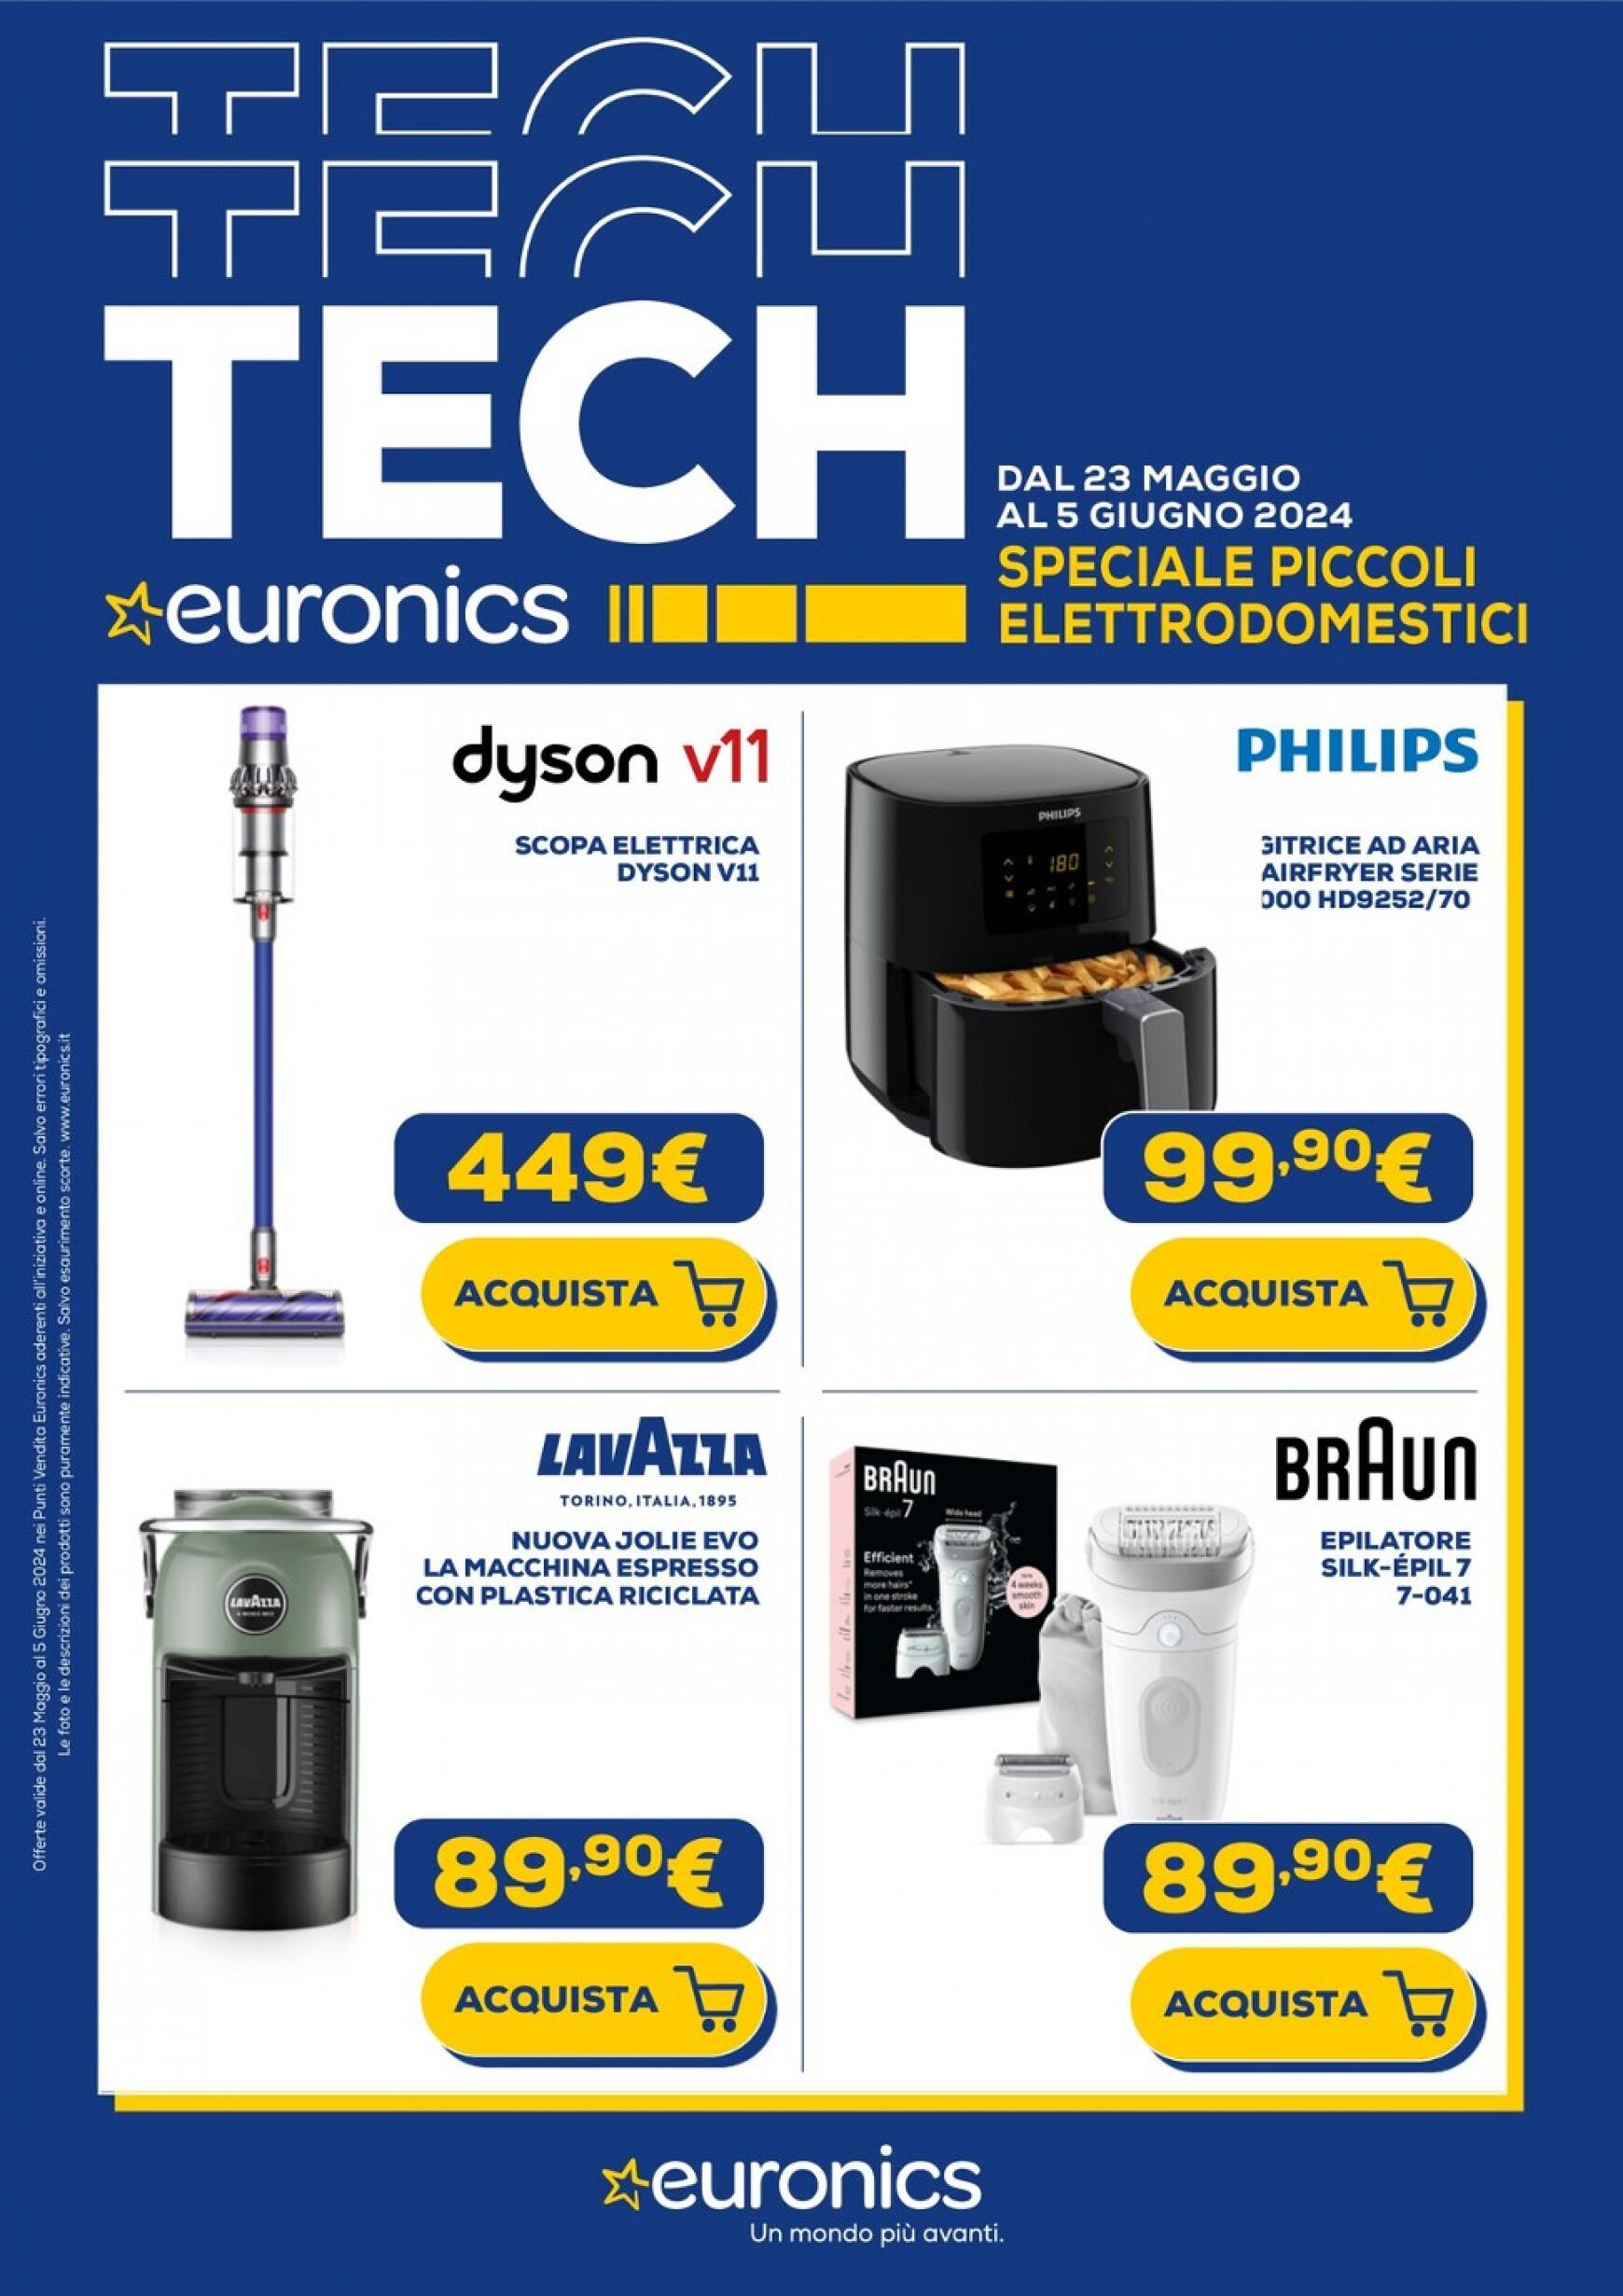 euronics - Nuovo volantino Euronics - Speciale Piccoli Elettrodomestici 23.05. - 05.06.